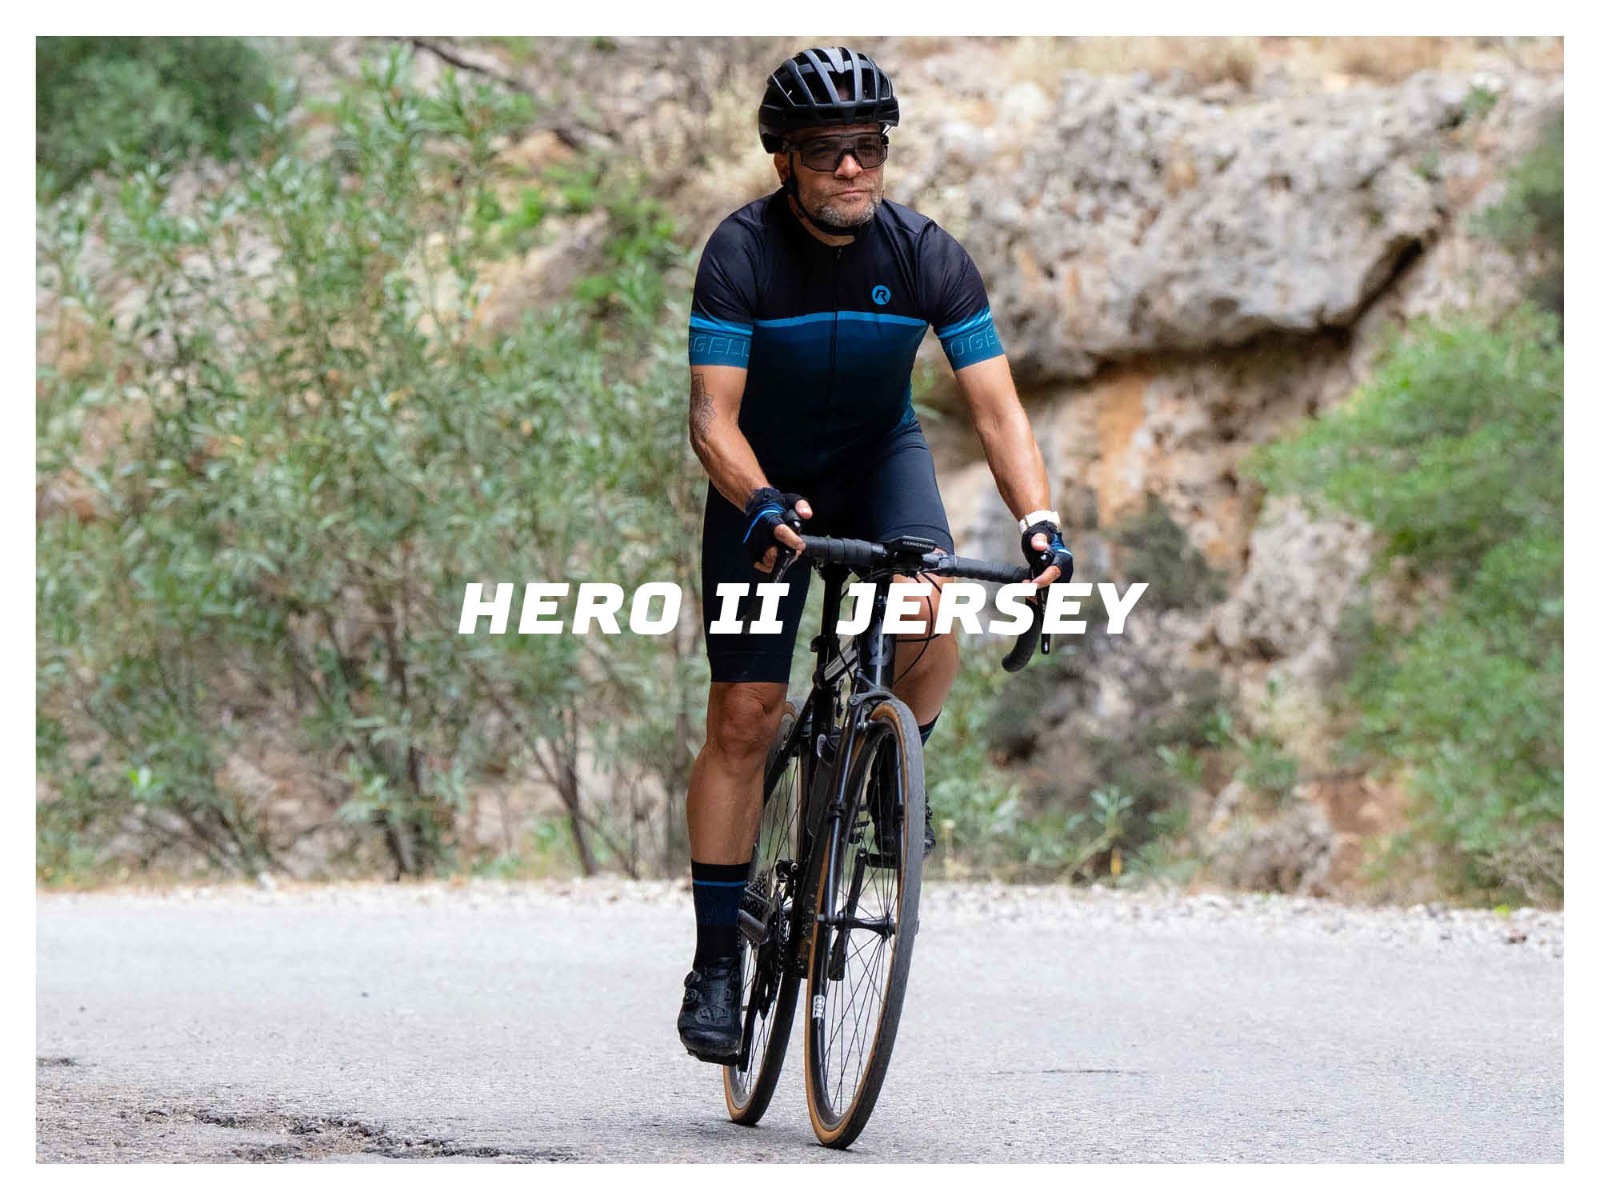 Mannelijke wielrenner fietsend op asfalt tussen de rotsen met het Hero II fietsshirt van Rogelli aan